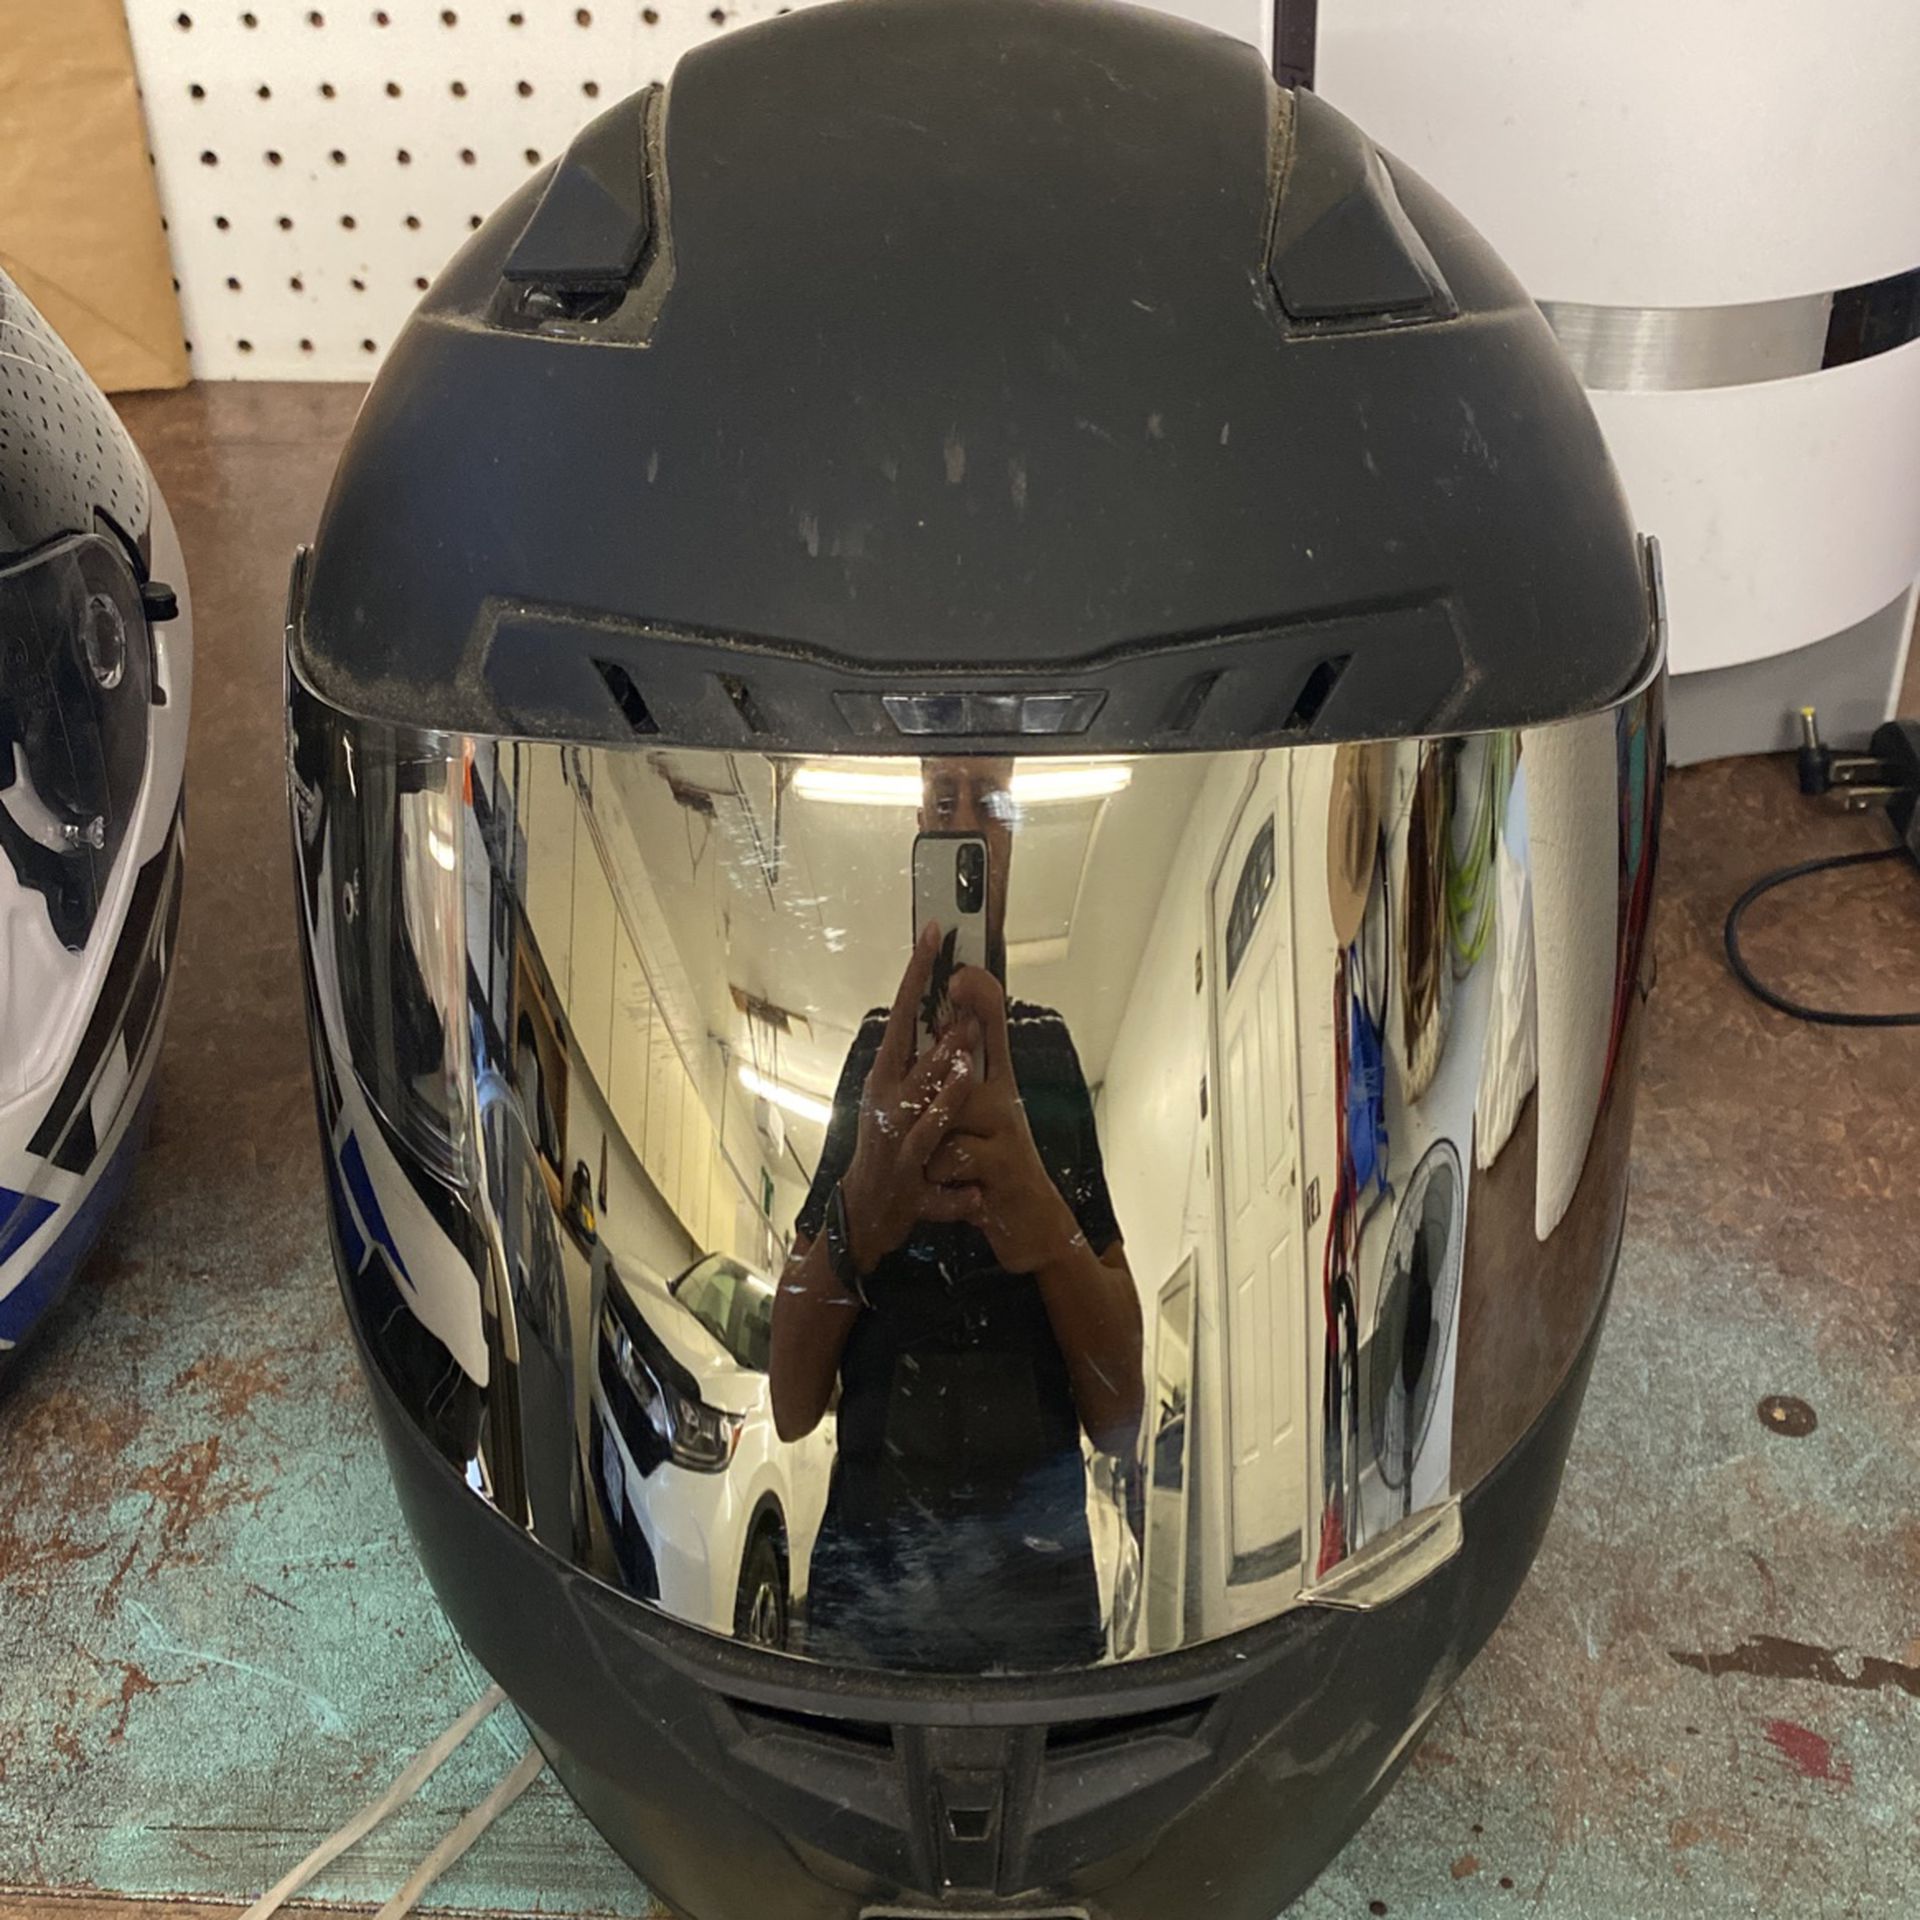 Updated Posting Motorcycle Helmets